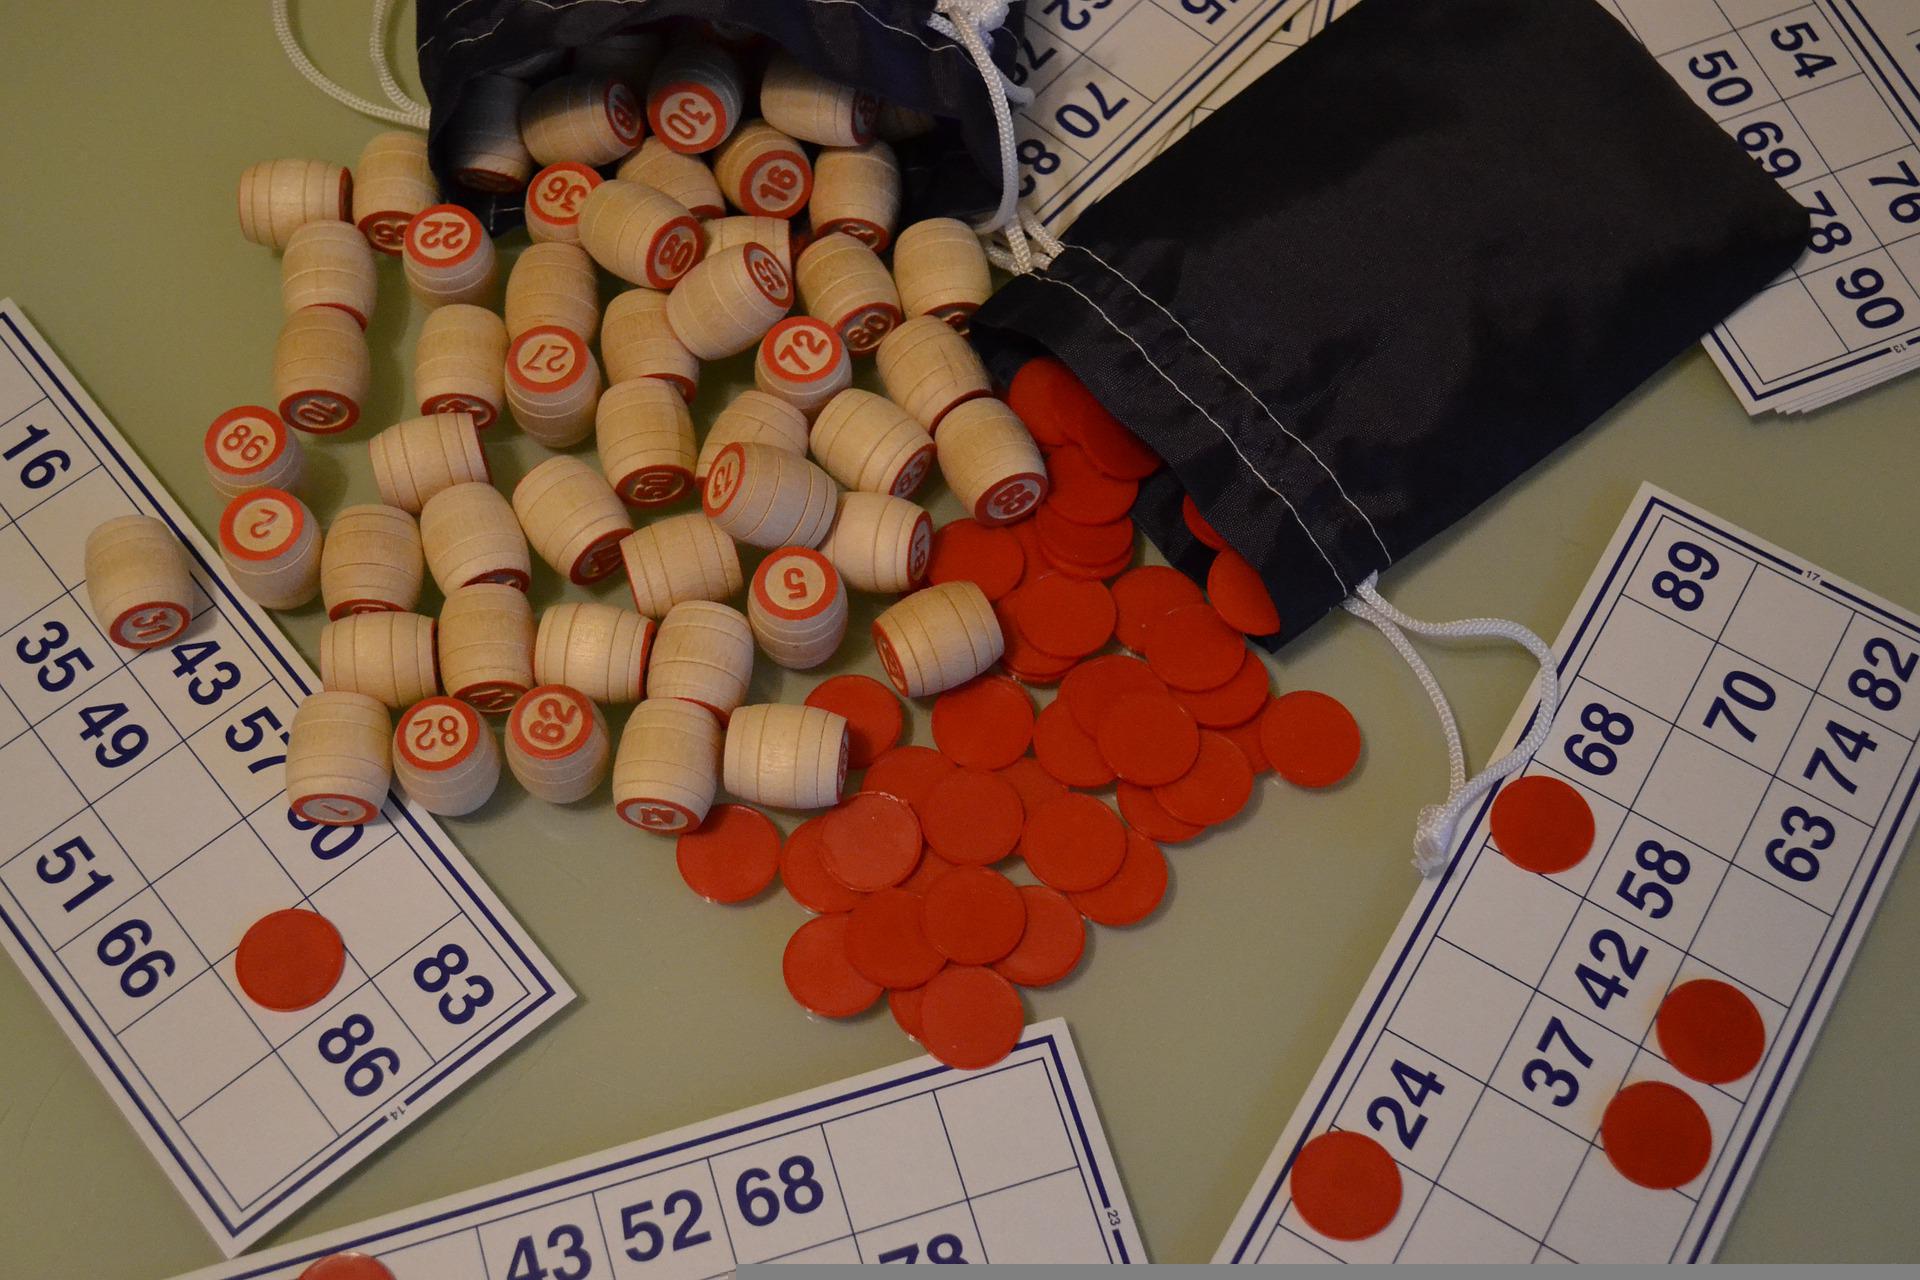 O bingo é um jogo muito famoso, encontrado sempre nas quermesses e outras festas comemorativas. Veja se é possível jogar bingo online.